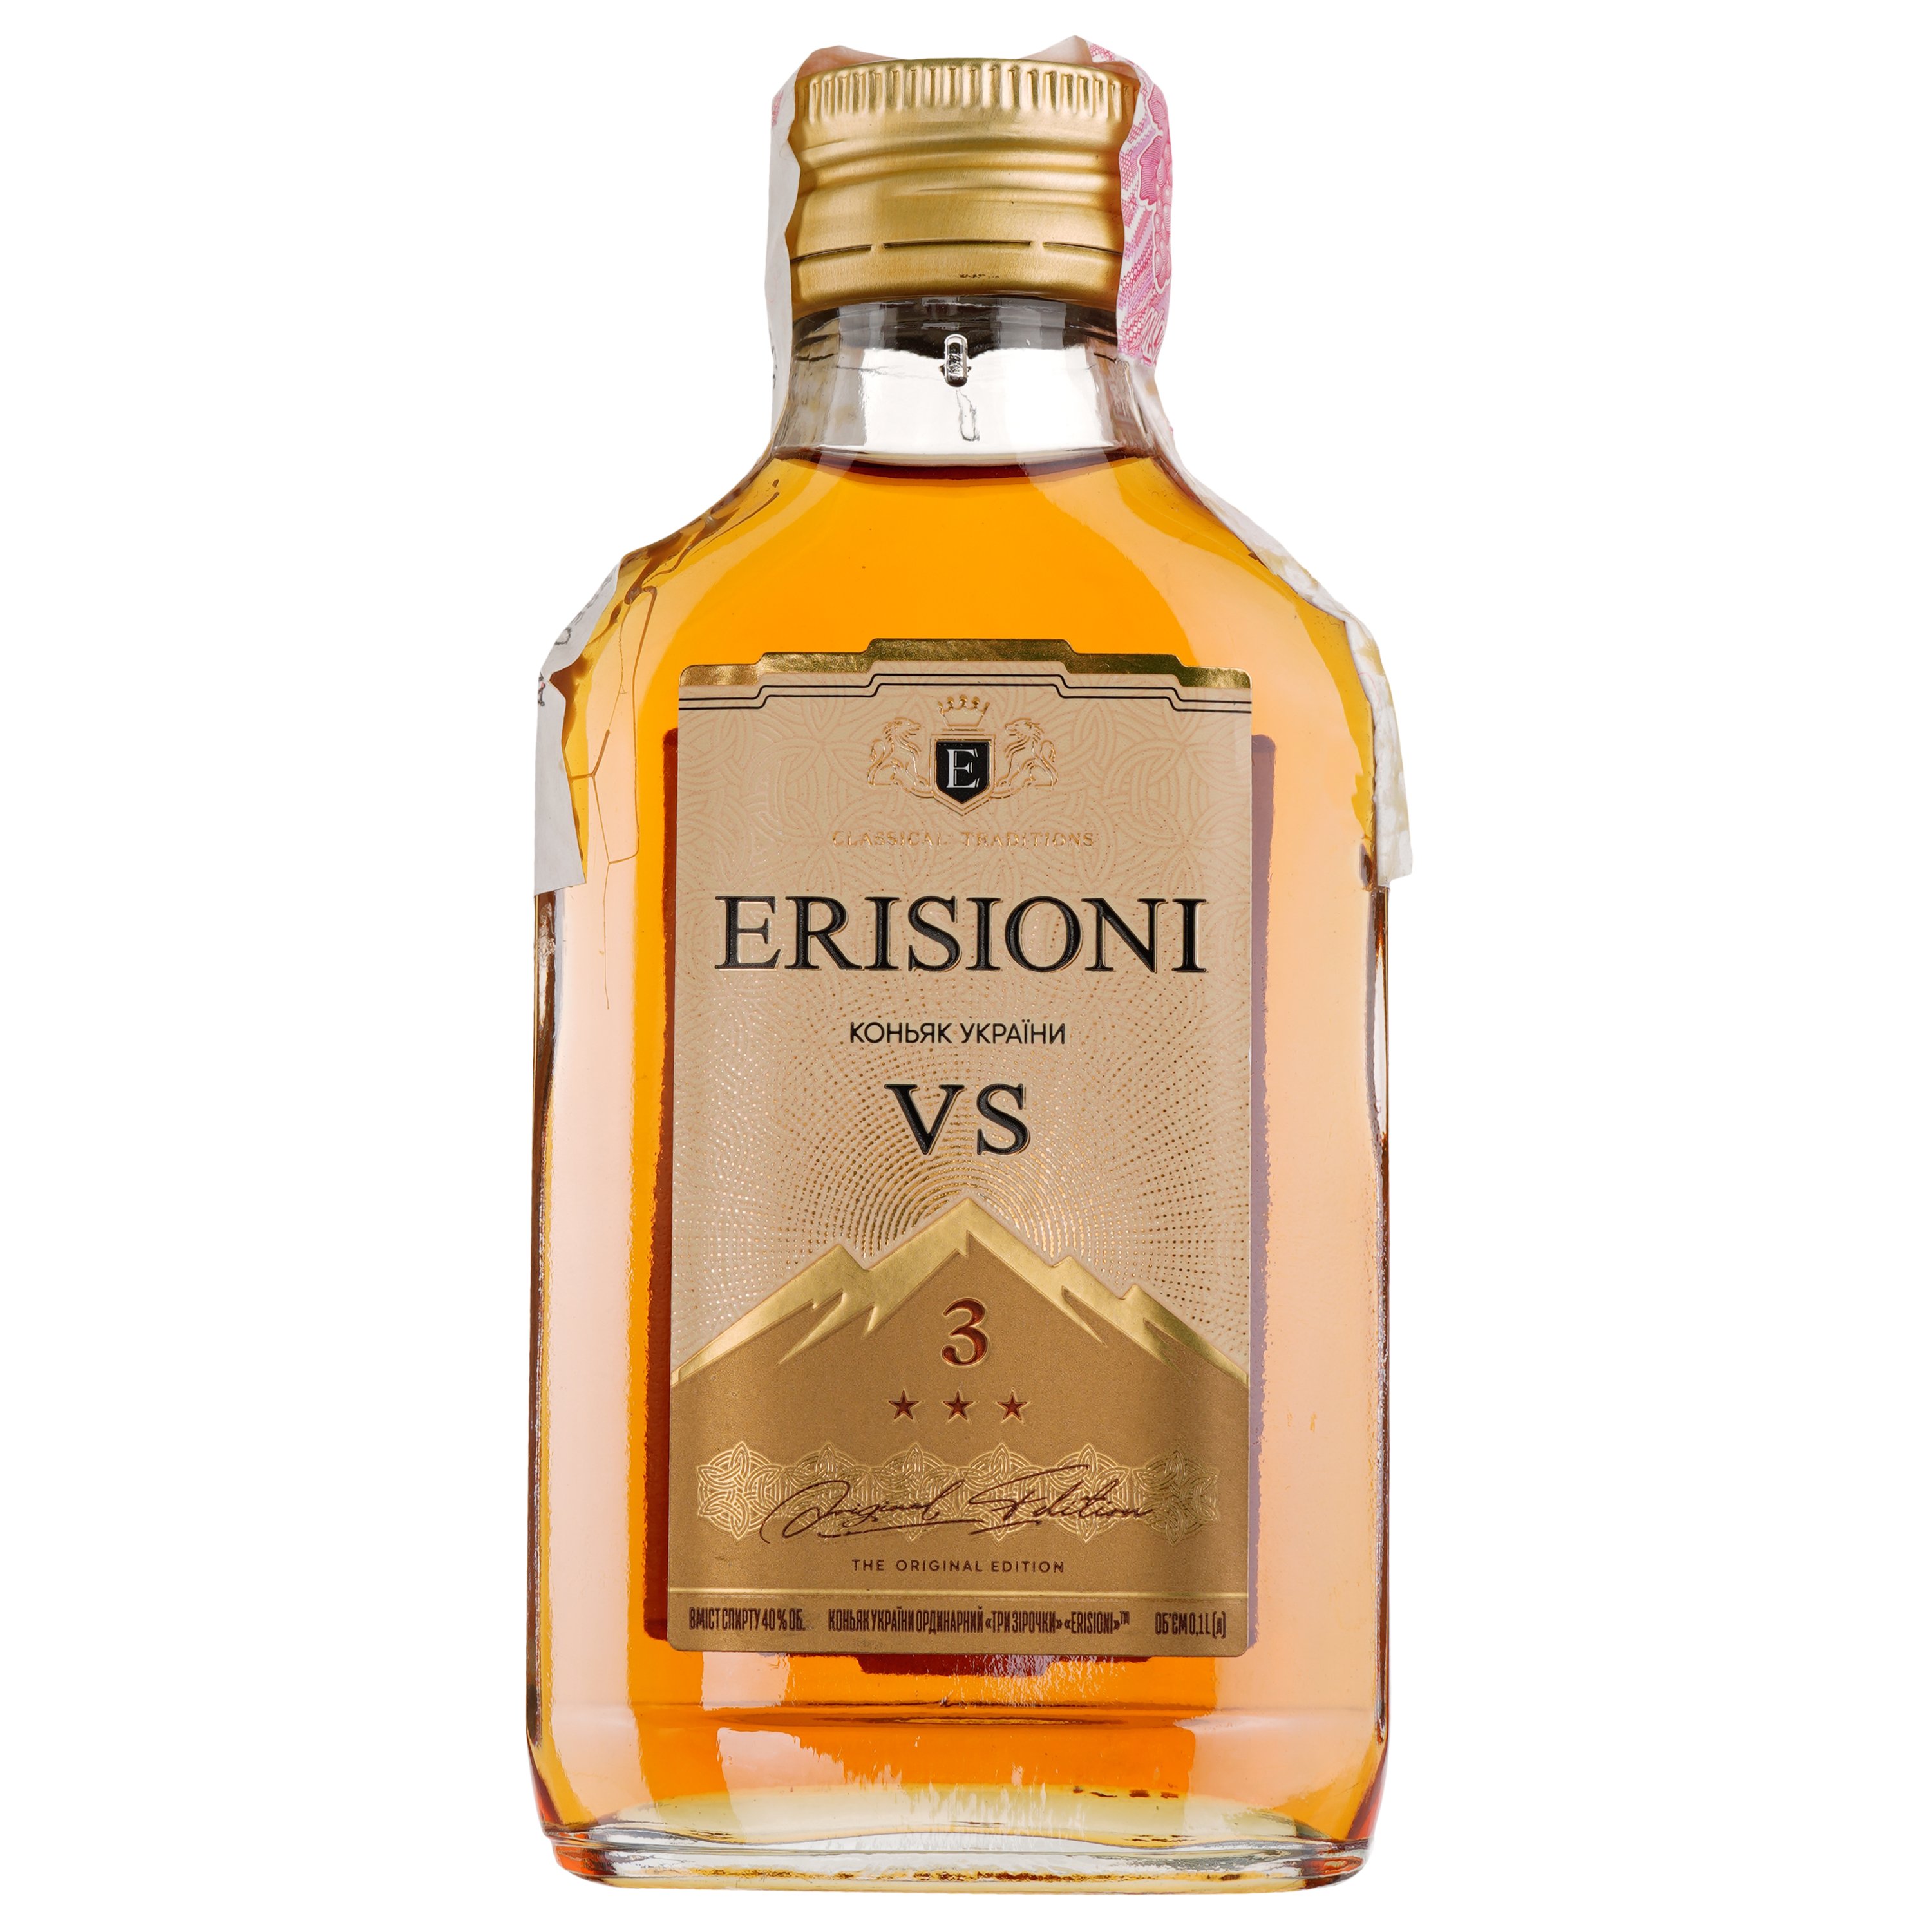 Коньяк Erisioni VS, 3 звезды, 40%, 0,1 л - фото 1